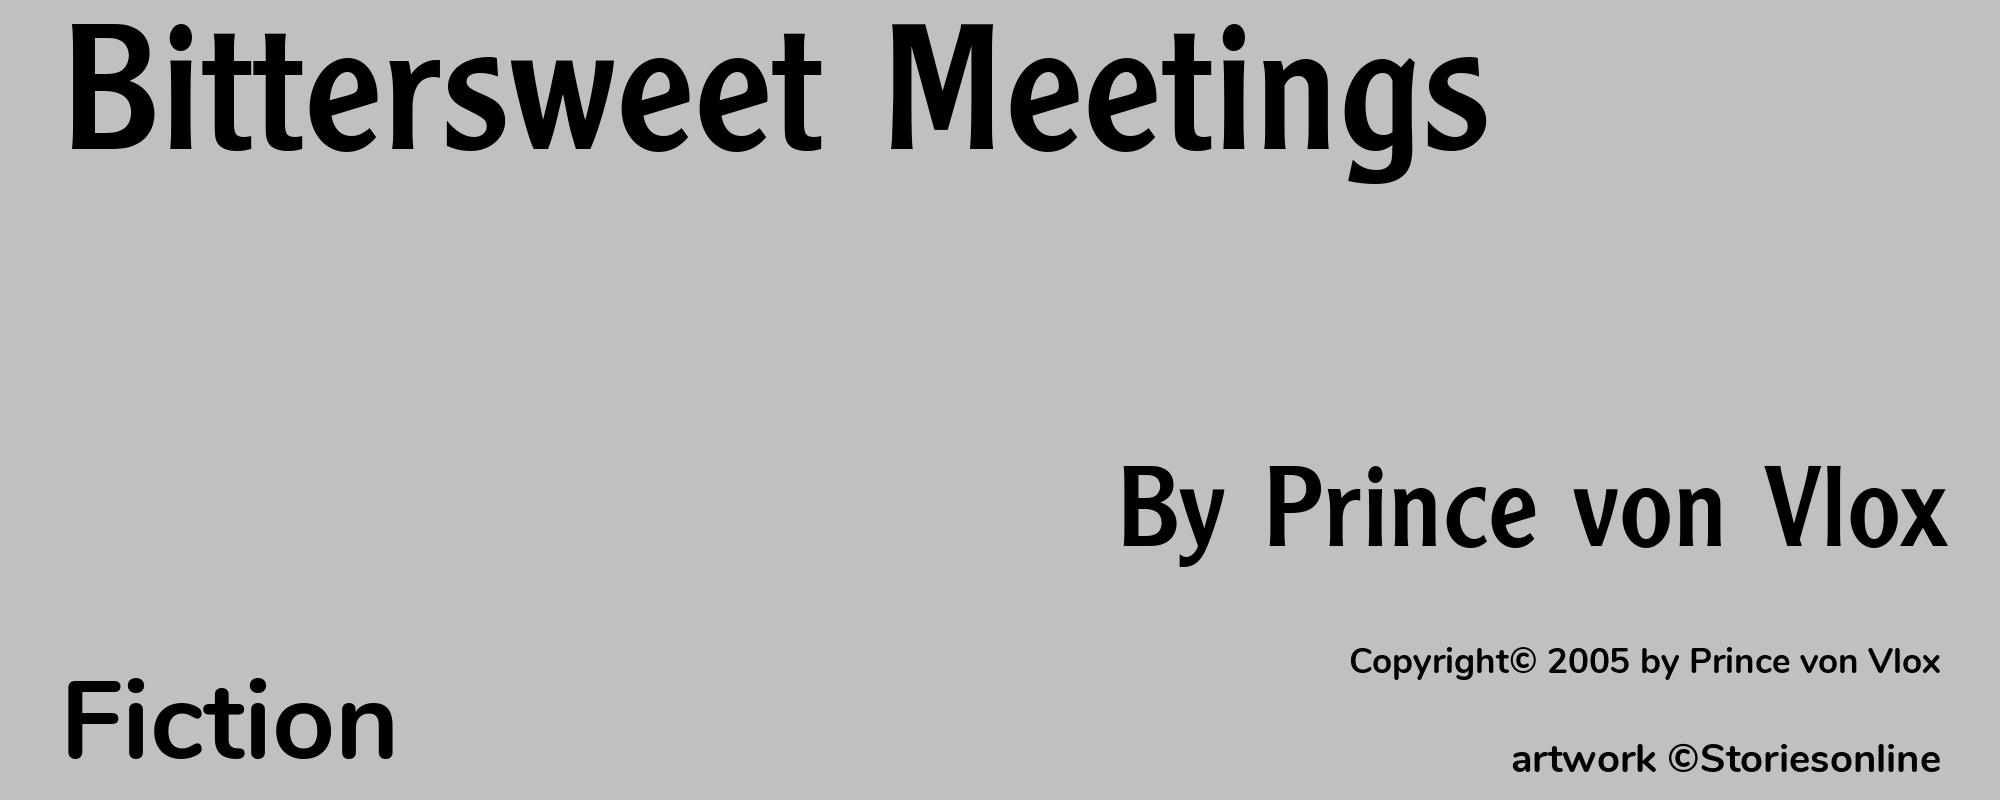 Bittersweet Meetings - Cover